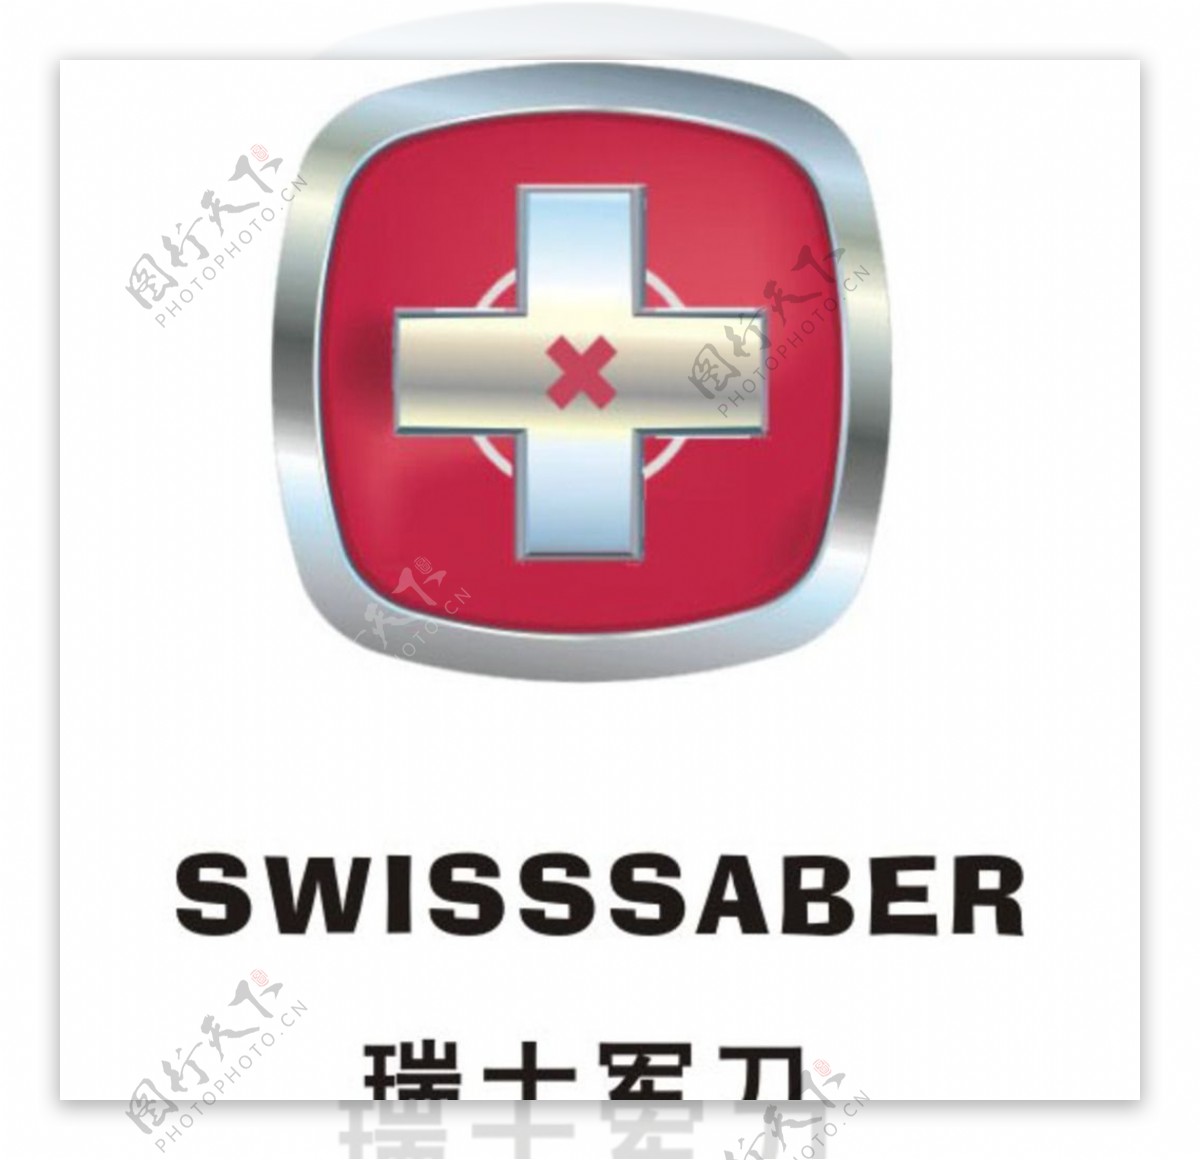 瑞士军刀SWISSSABER图片